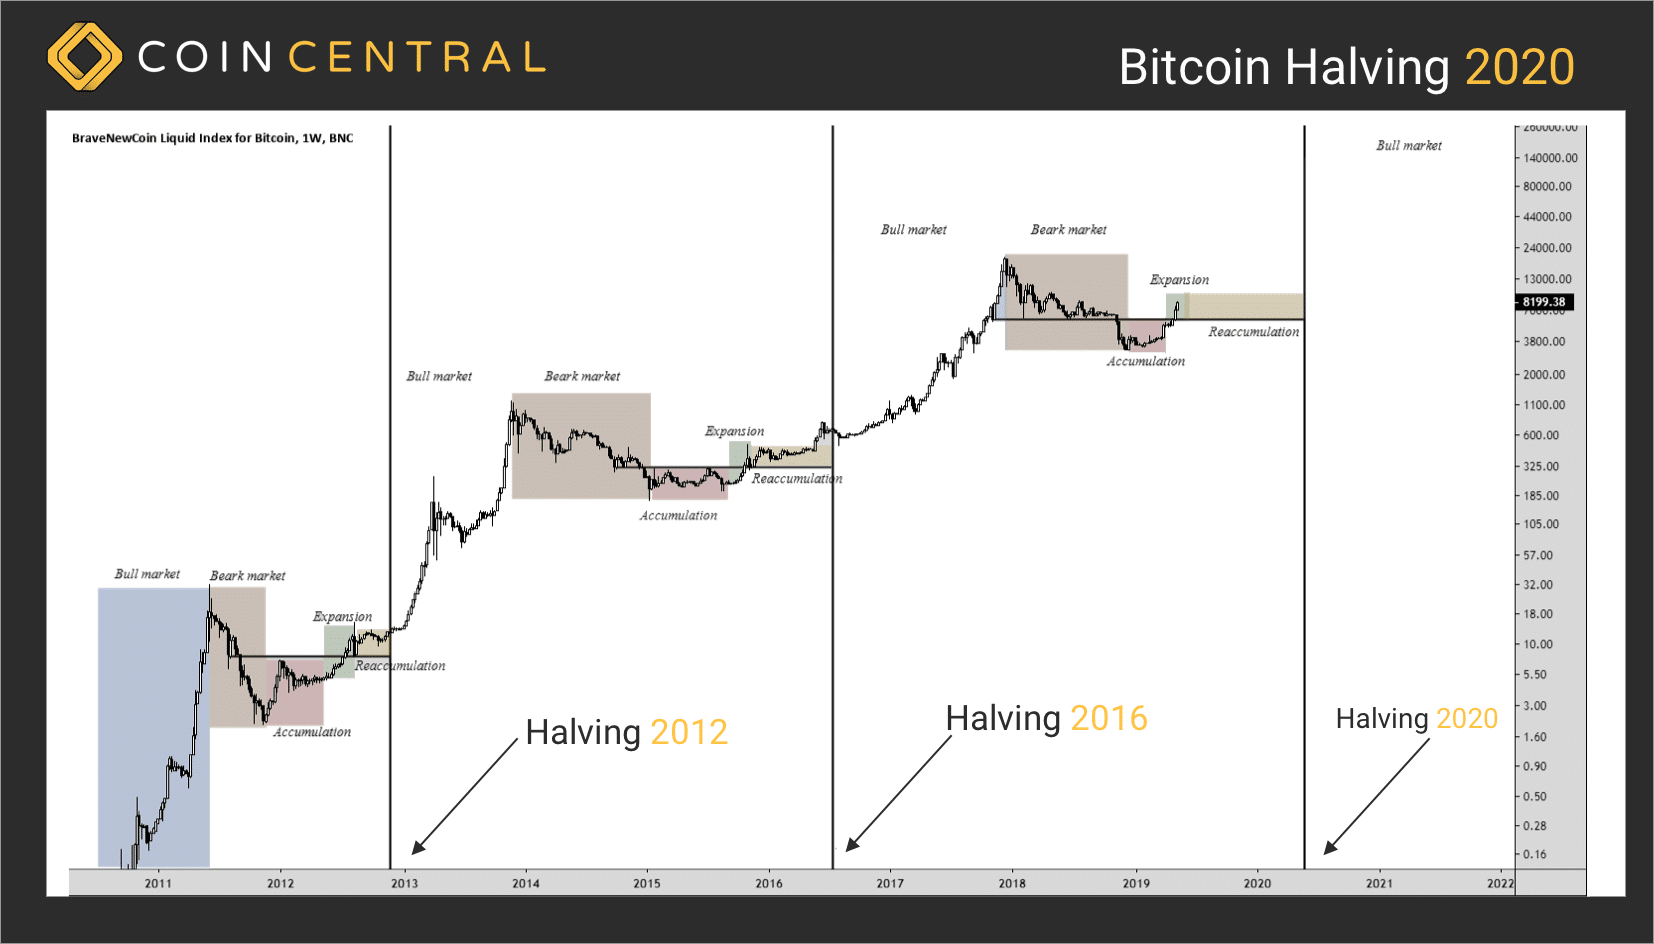 Komt er een prijssprong na bitcoin halvering 2020? De tijd zal het leren.